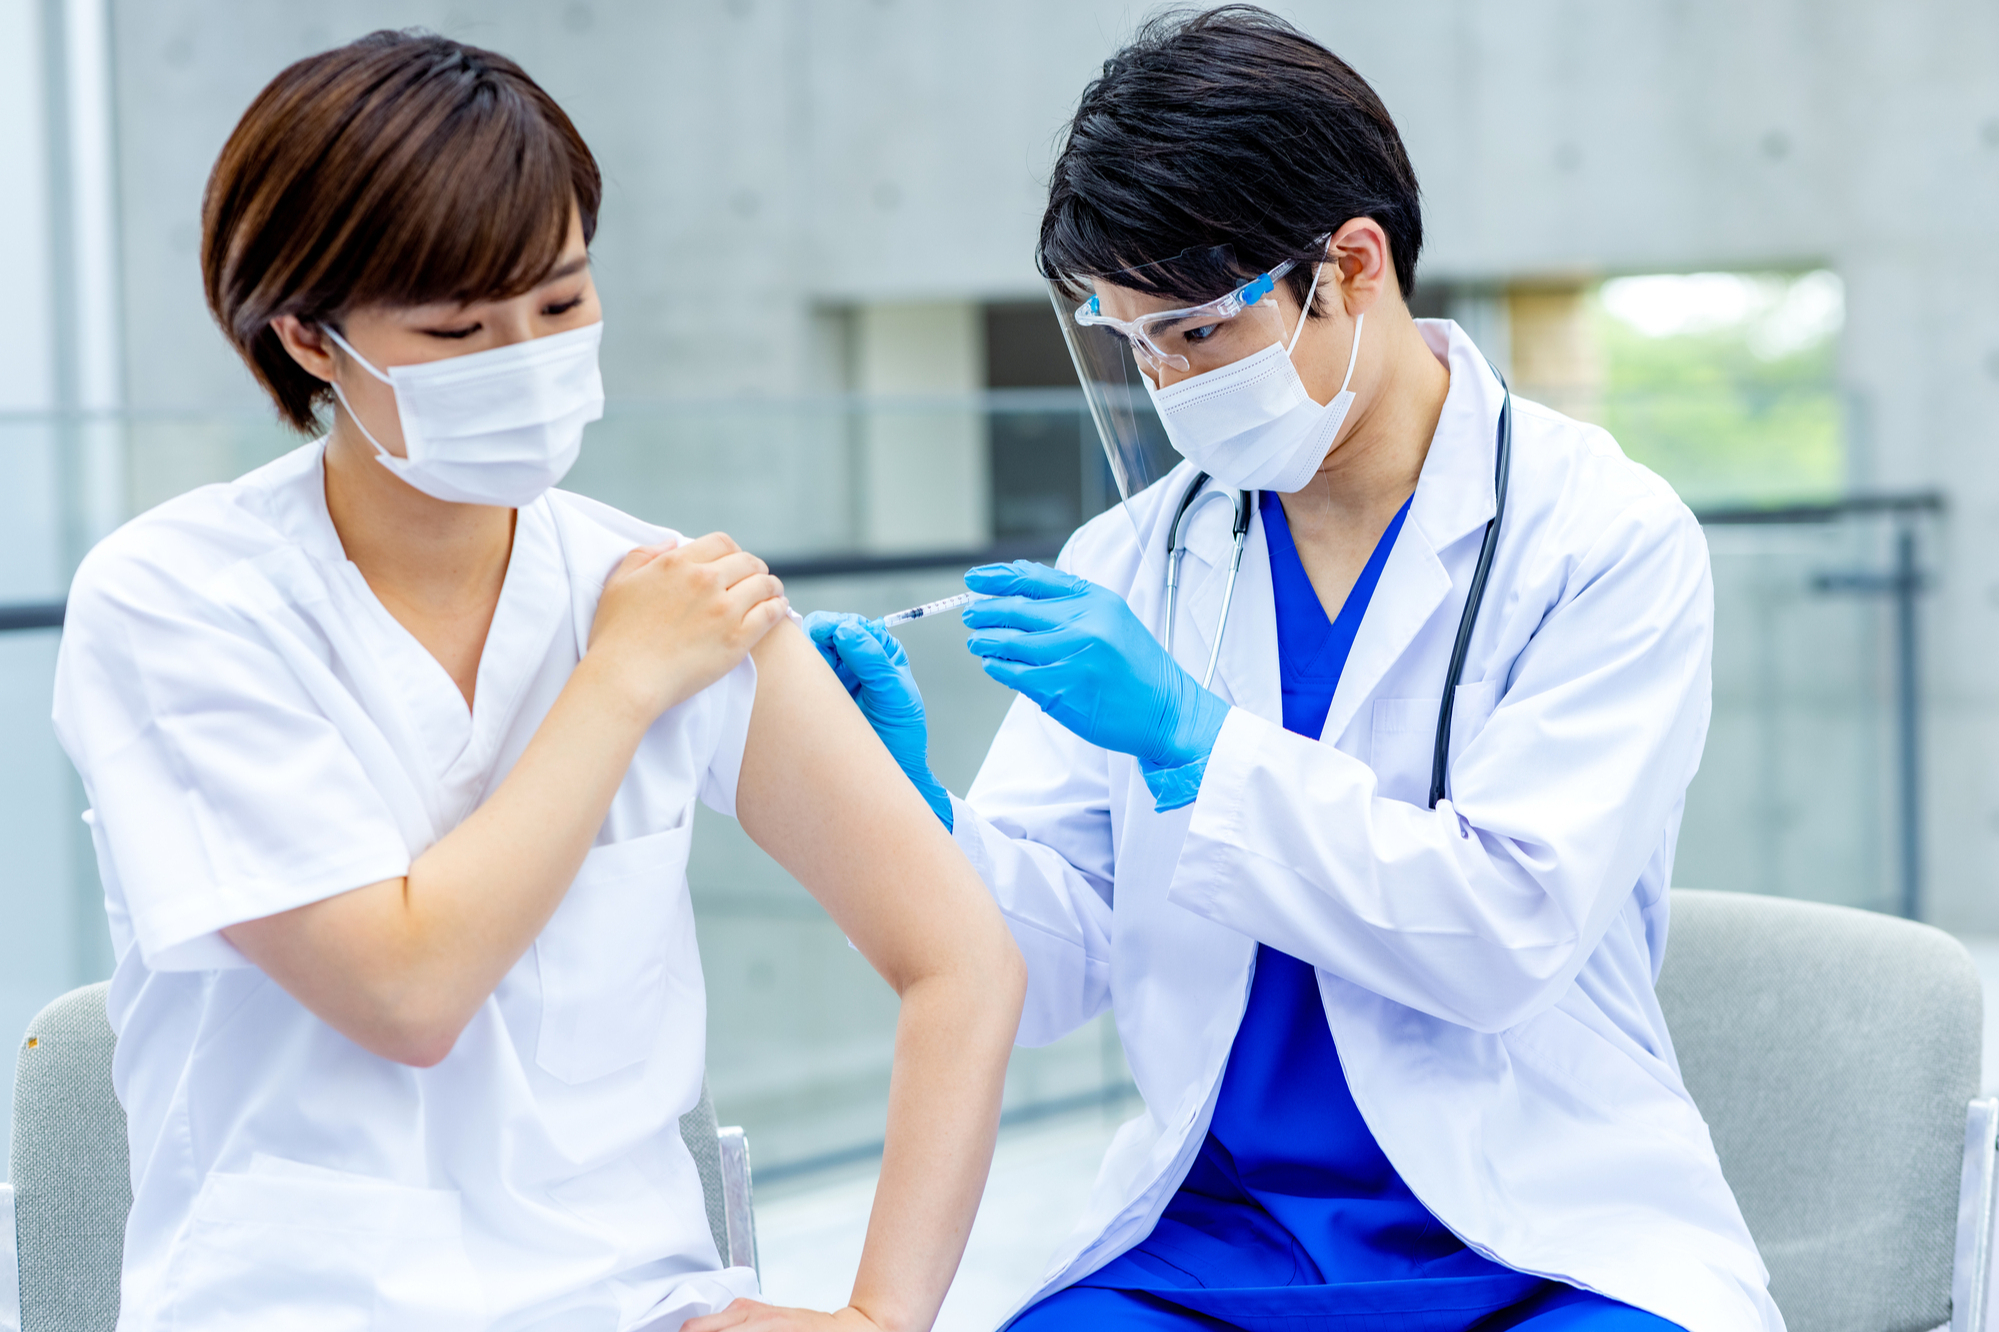 日本のワクチン接種率は約76%に達している（写真はイメージ） =PIXTA